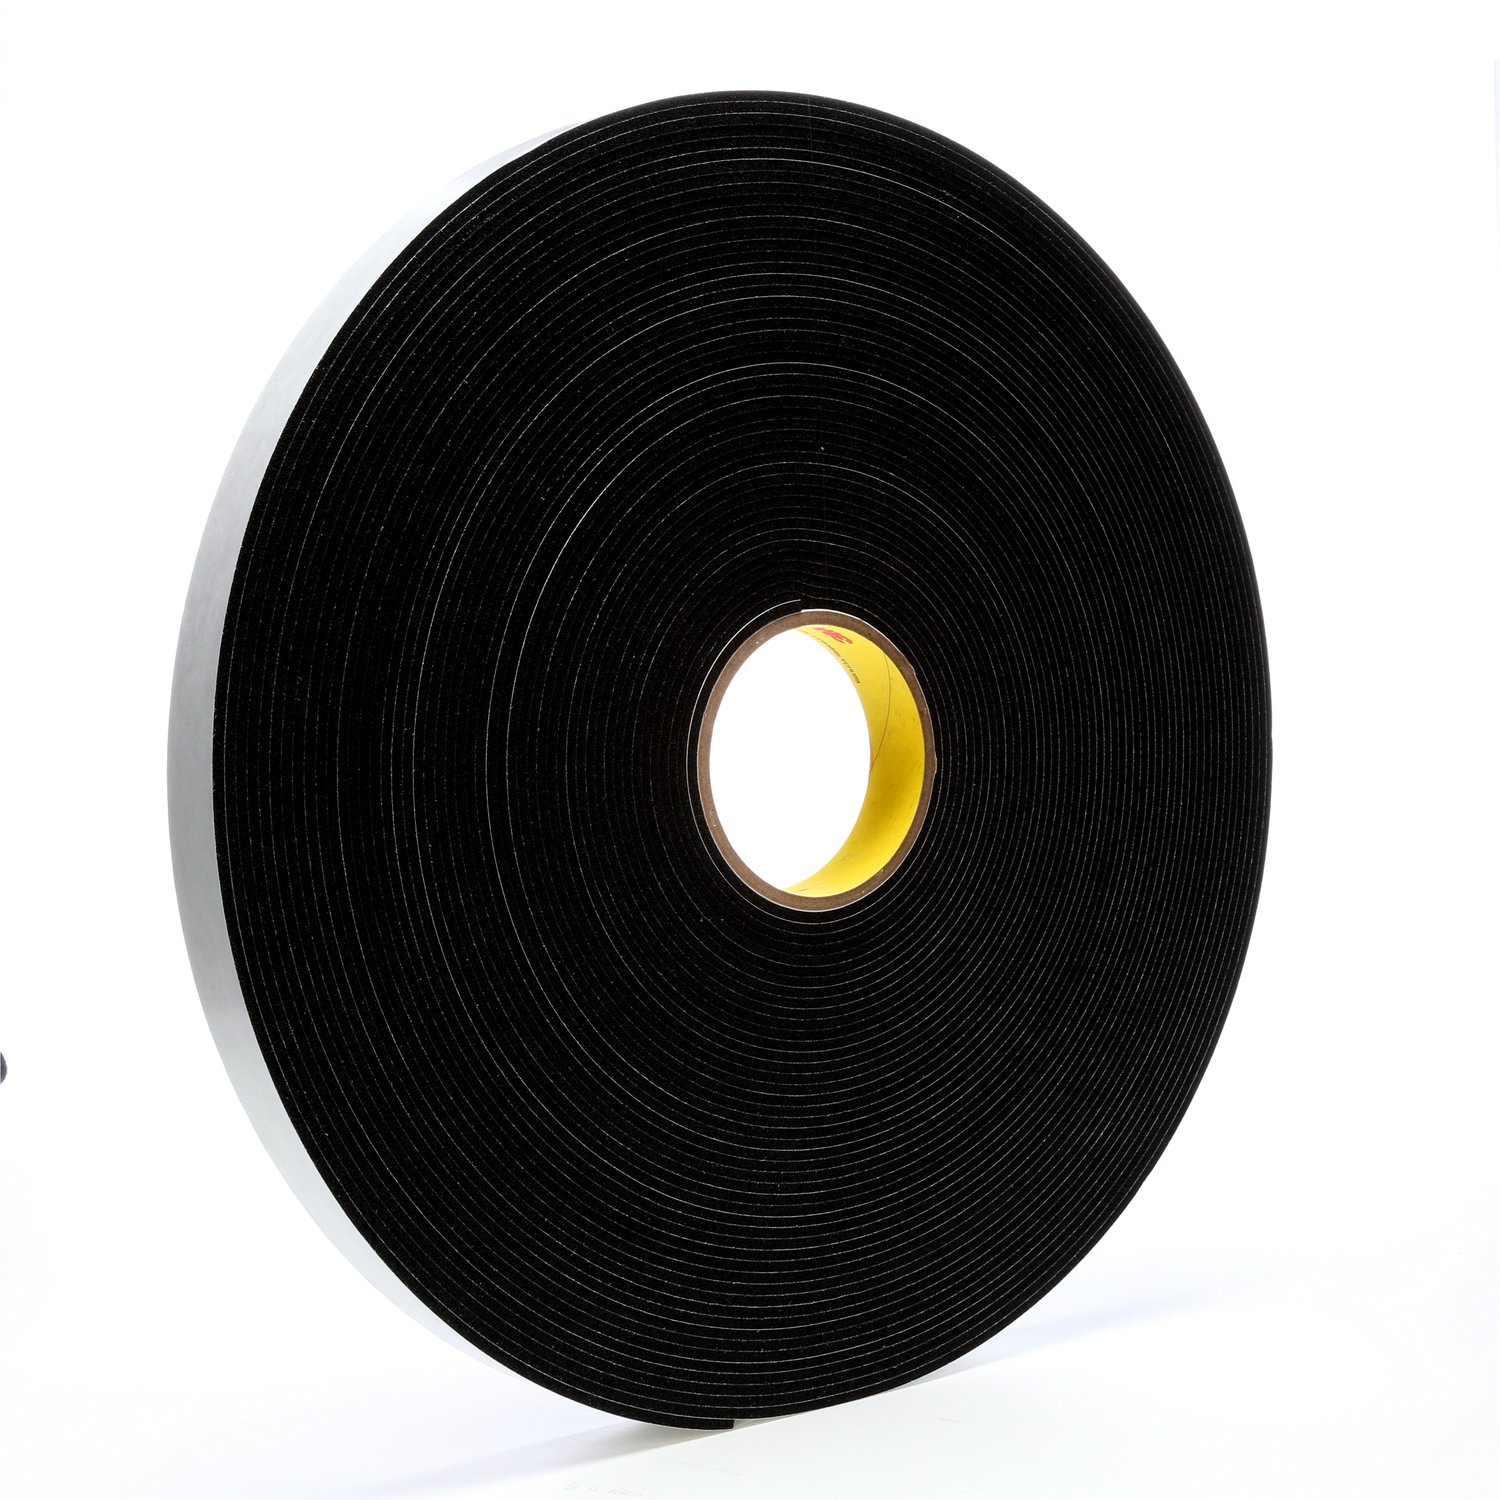 7000047497 - 3M Vinyl Foam Tape 4508, Black, 1 in x 36 yd, 125 mil, 9 rolls per case